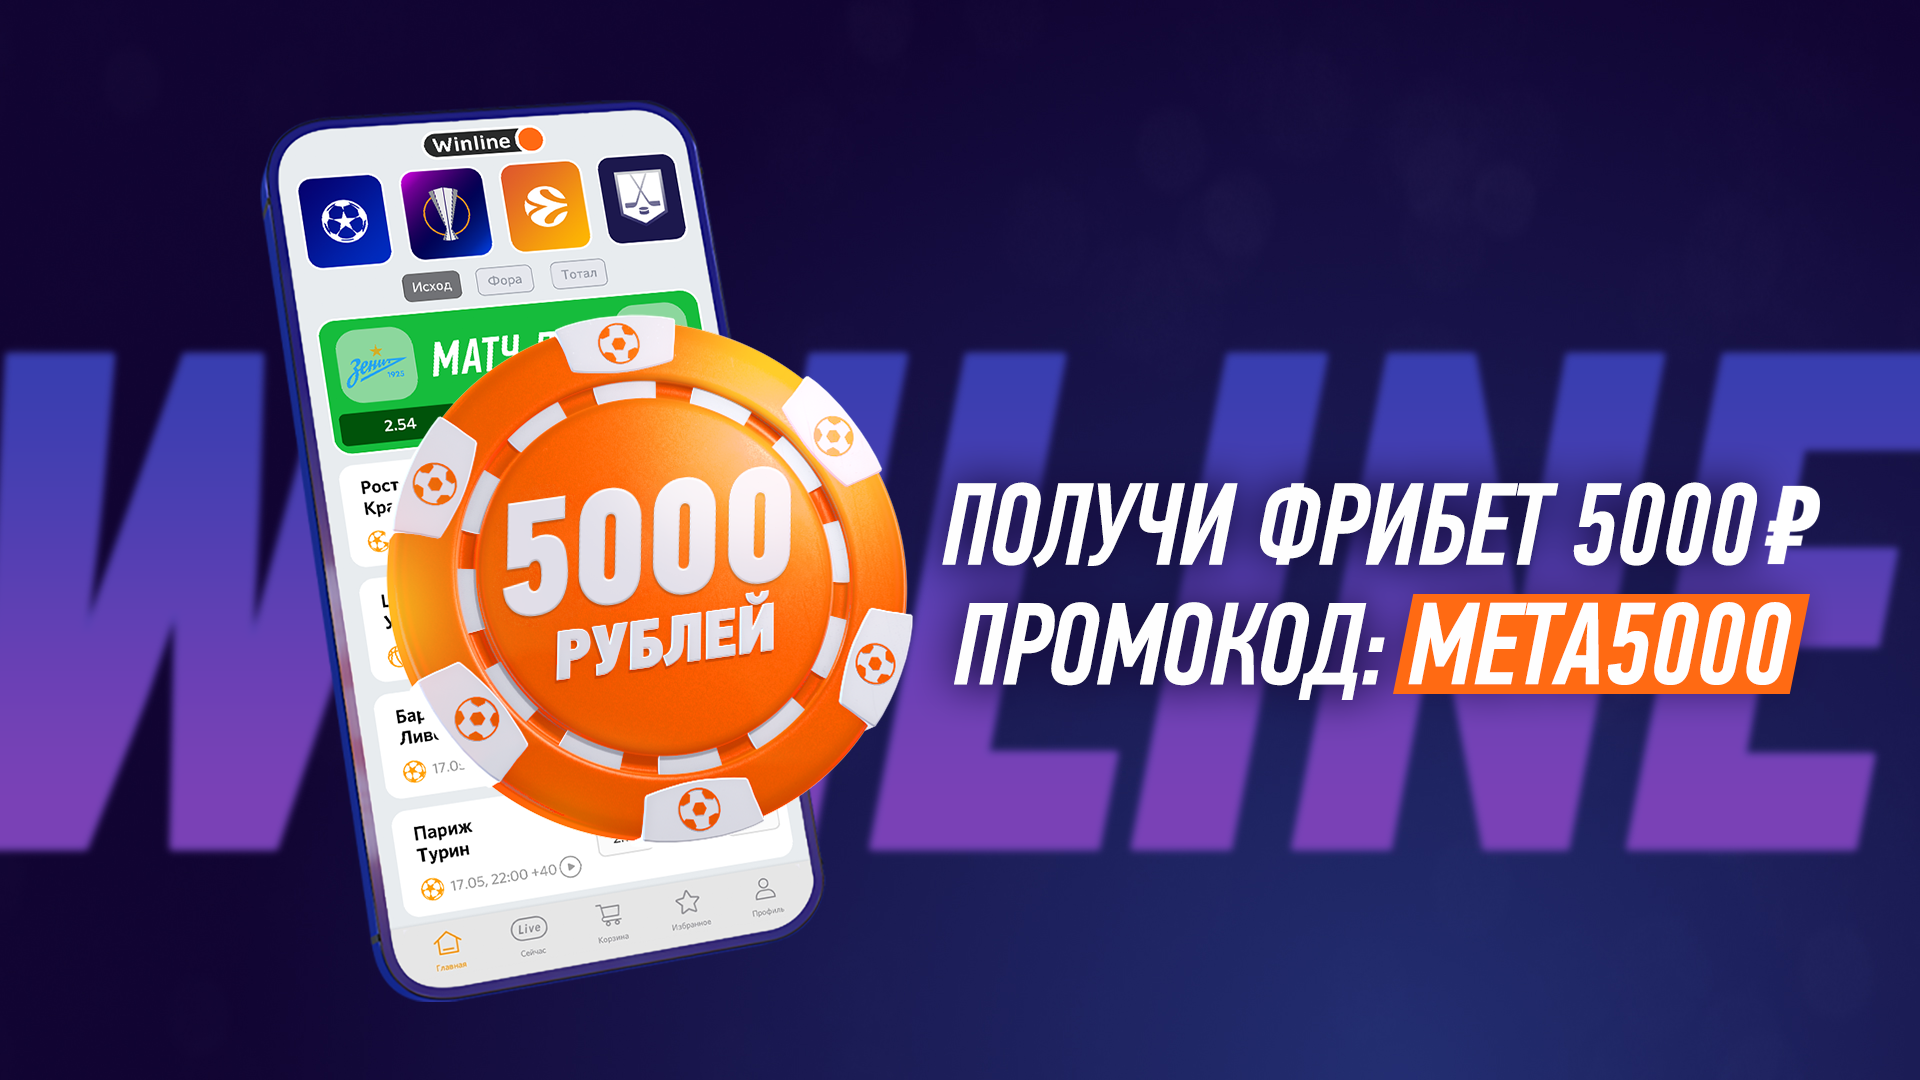 «Винлайн» дарит безусловные 5000 рублей только по экслюзивному промокоду META5000